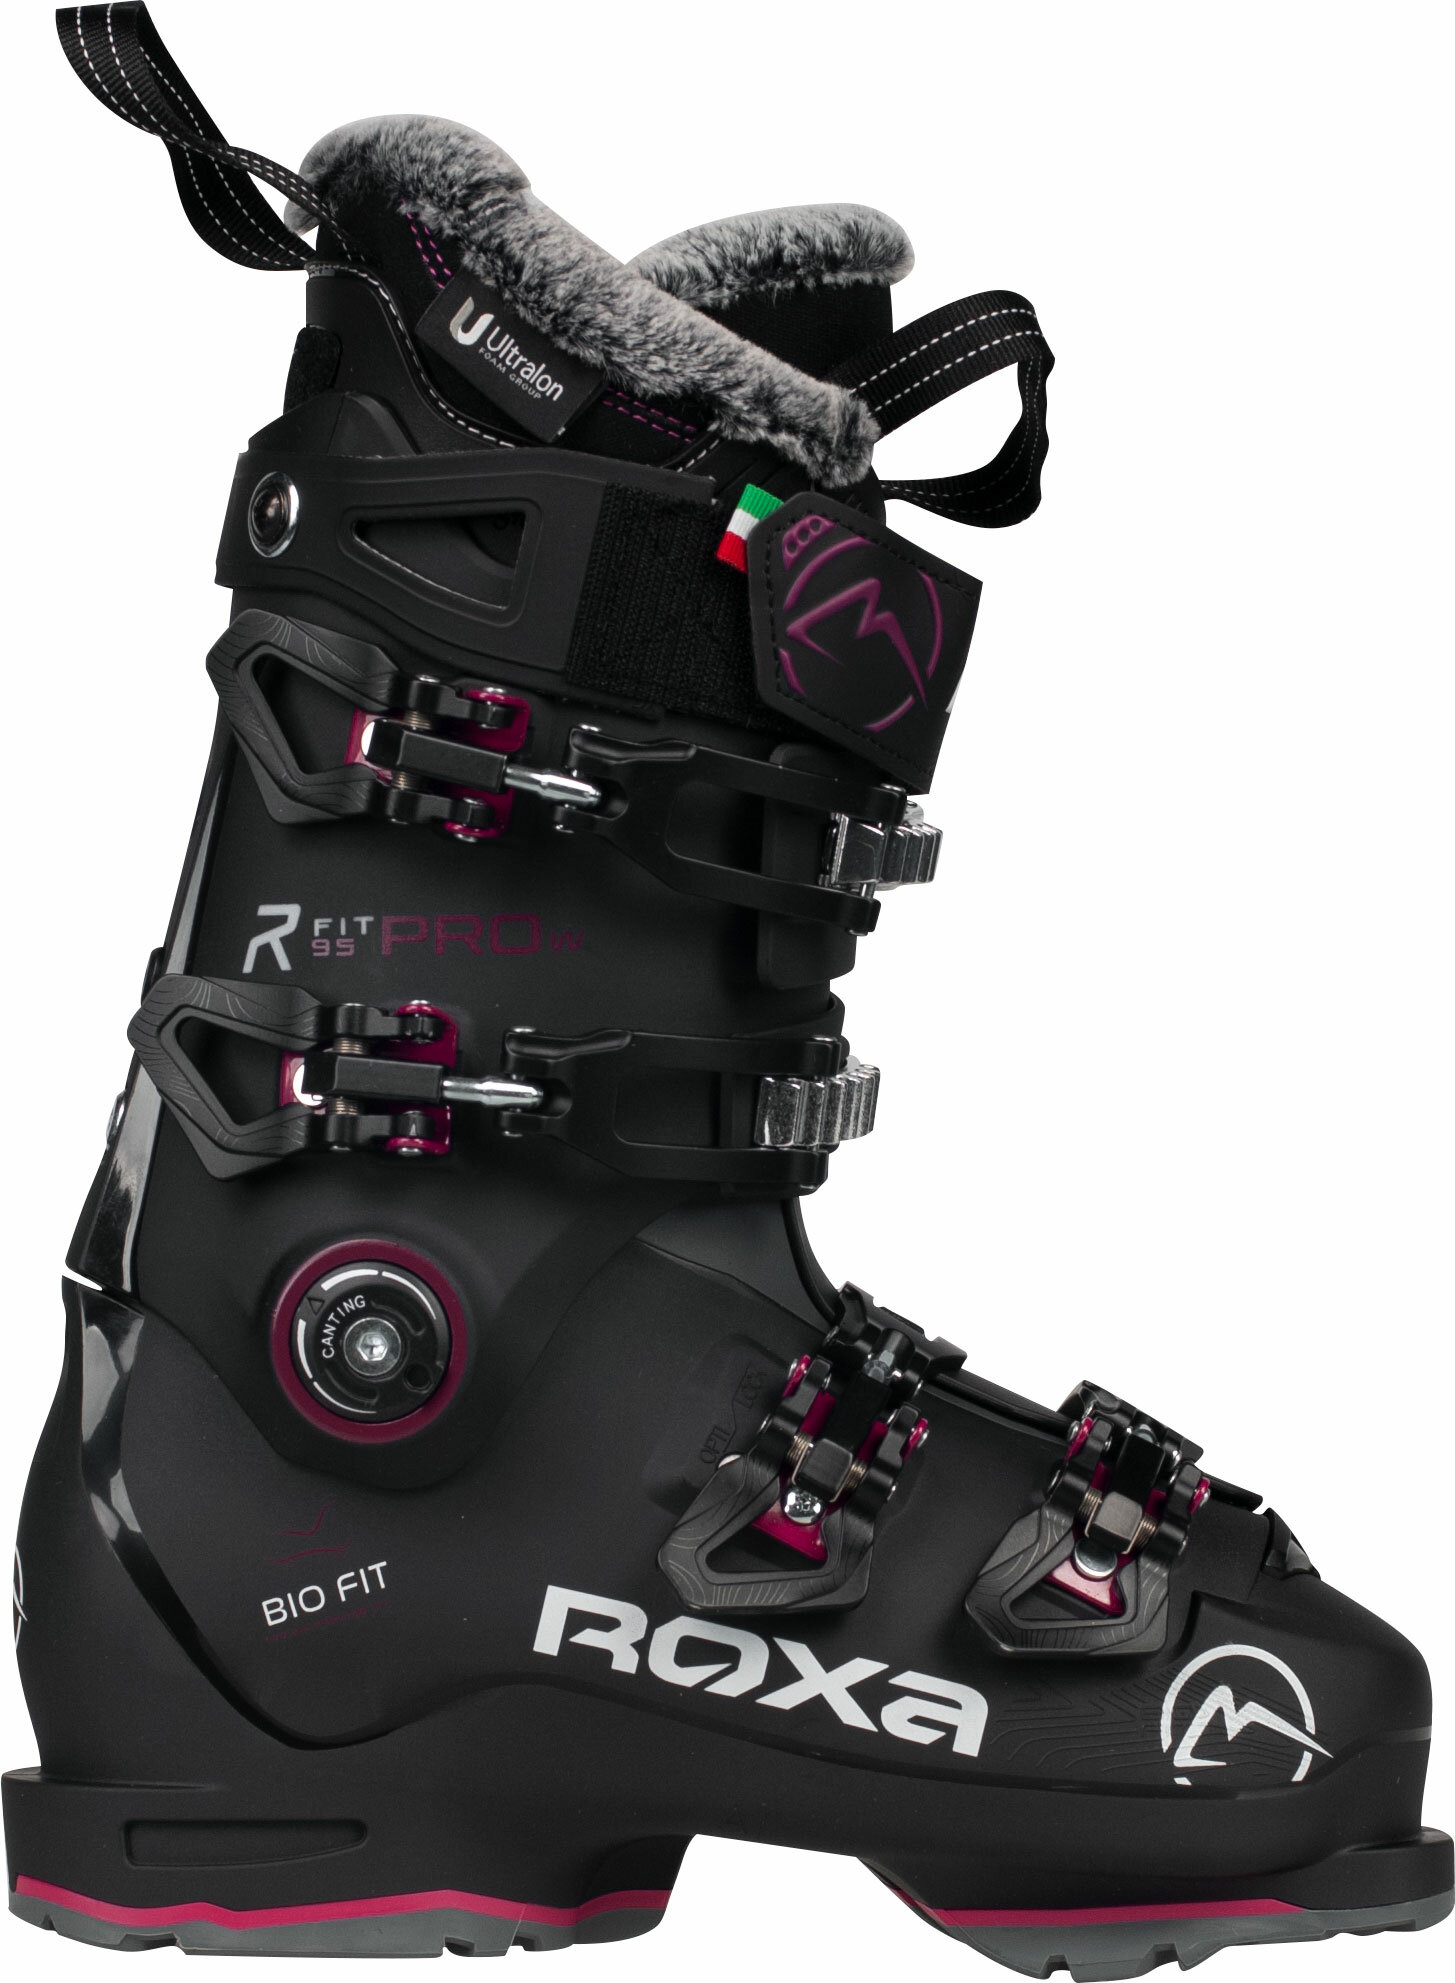 Ботинки ROXA RFIT PRO W 95 Gw (23/24) Black-Plum, 25,5 см